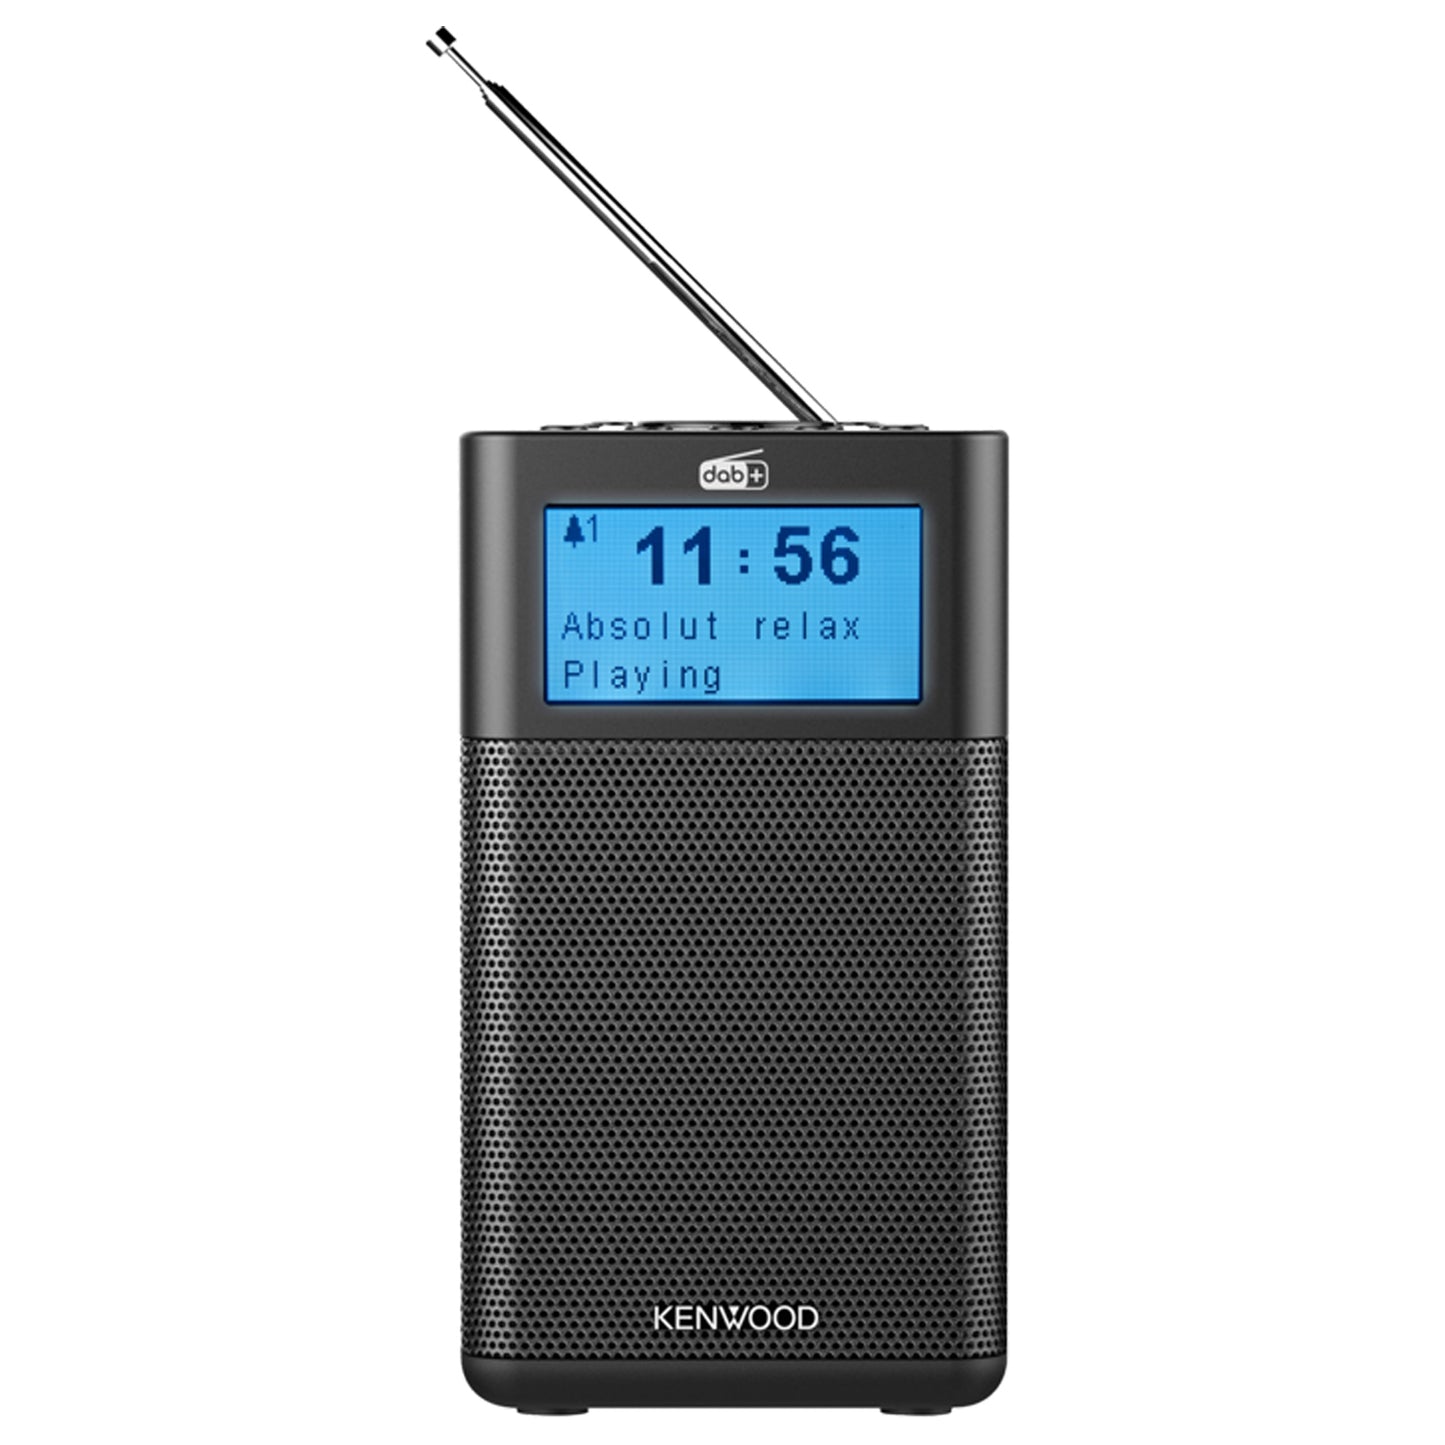 KENWOOD Radio portatile FM/DAB con display, altoparlante bluetooth con griglia in metallo, sorgente aux con jack 3,5mm, funzione sveglia integrata